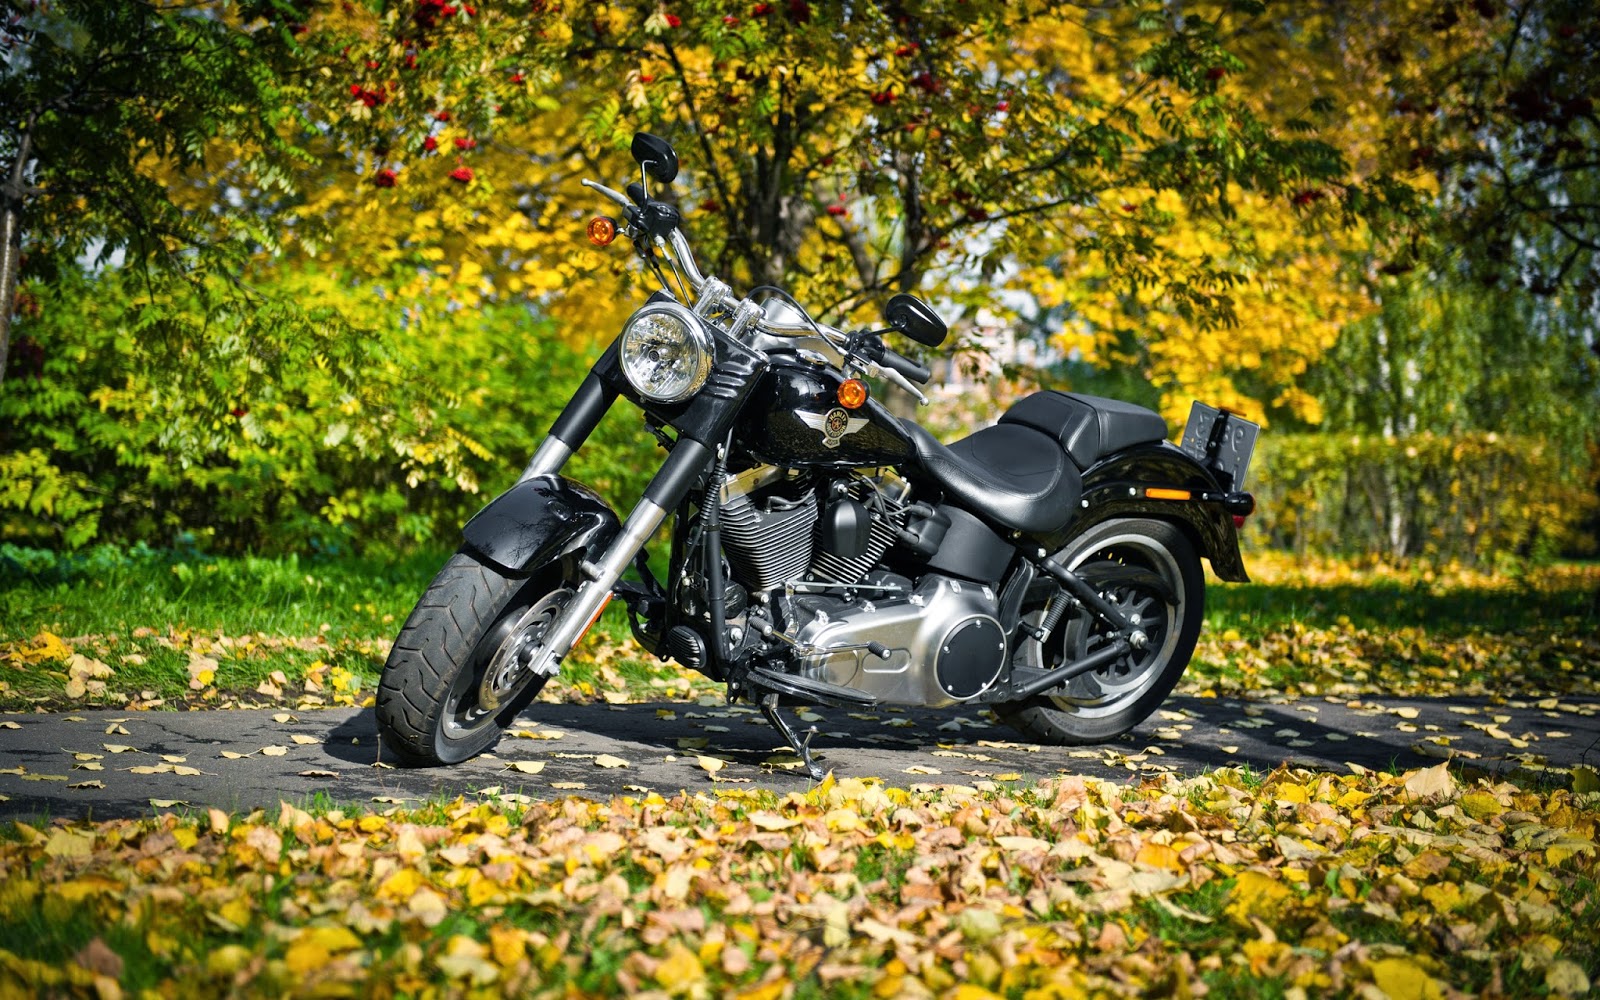 Kumpulan 87 Gambar Motor Harley Davidson Keren Terkeren Bamboe Modif